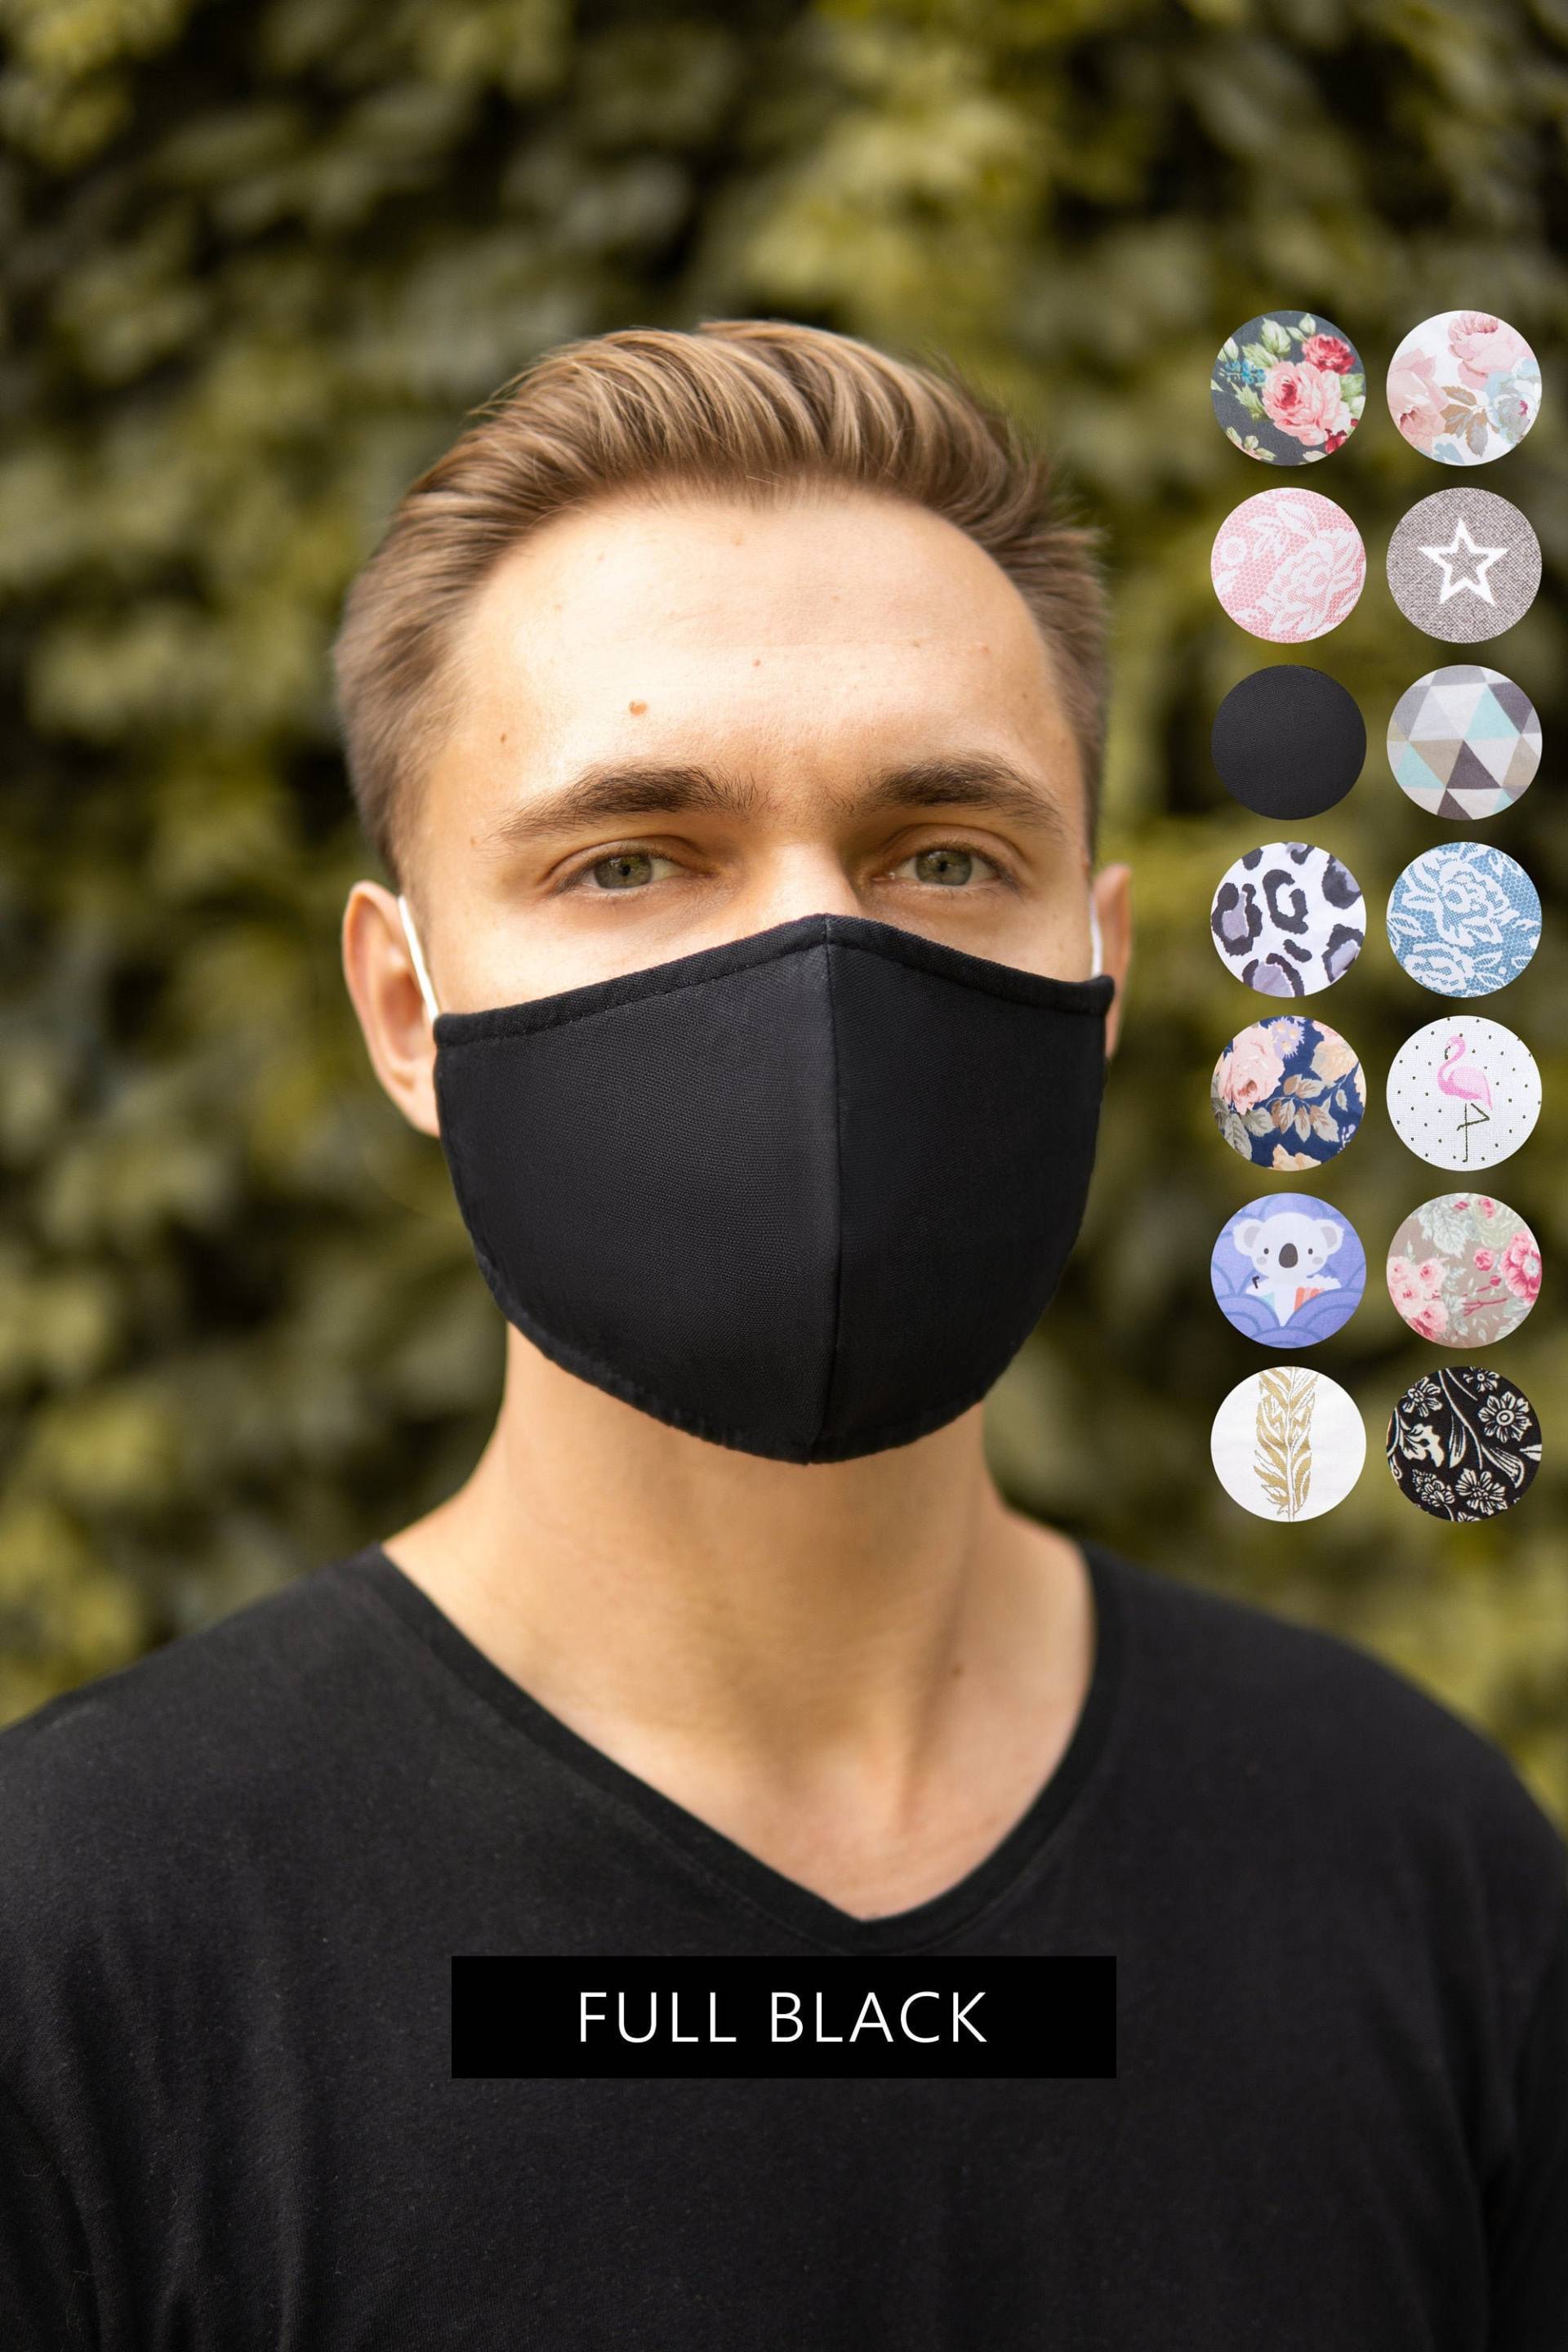 Herren Schwarze Gesichtsmaske Für Männer Mit Filtertasche Usa & Uk, Gesichtsbedeckung Waschbar, Atmungsaktive Maske Brillenträger von Etsy - SoftFeelingsArt